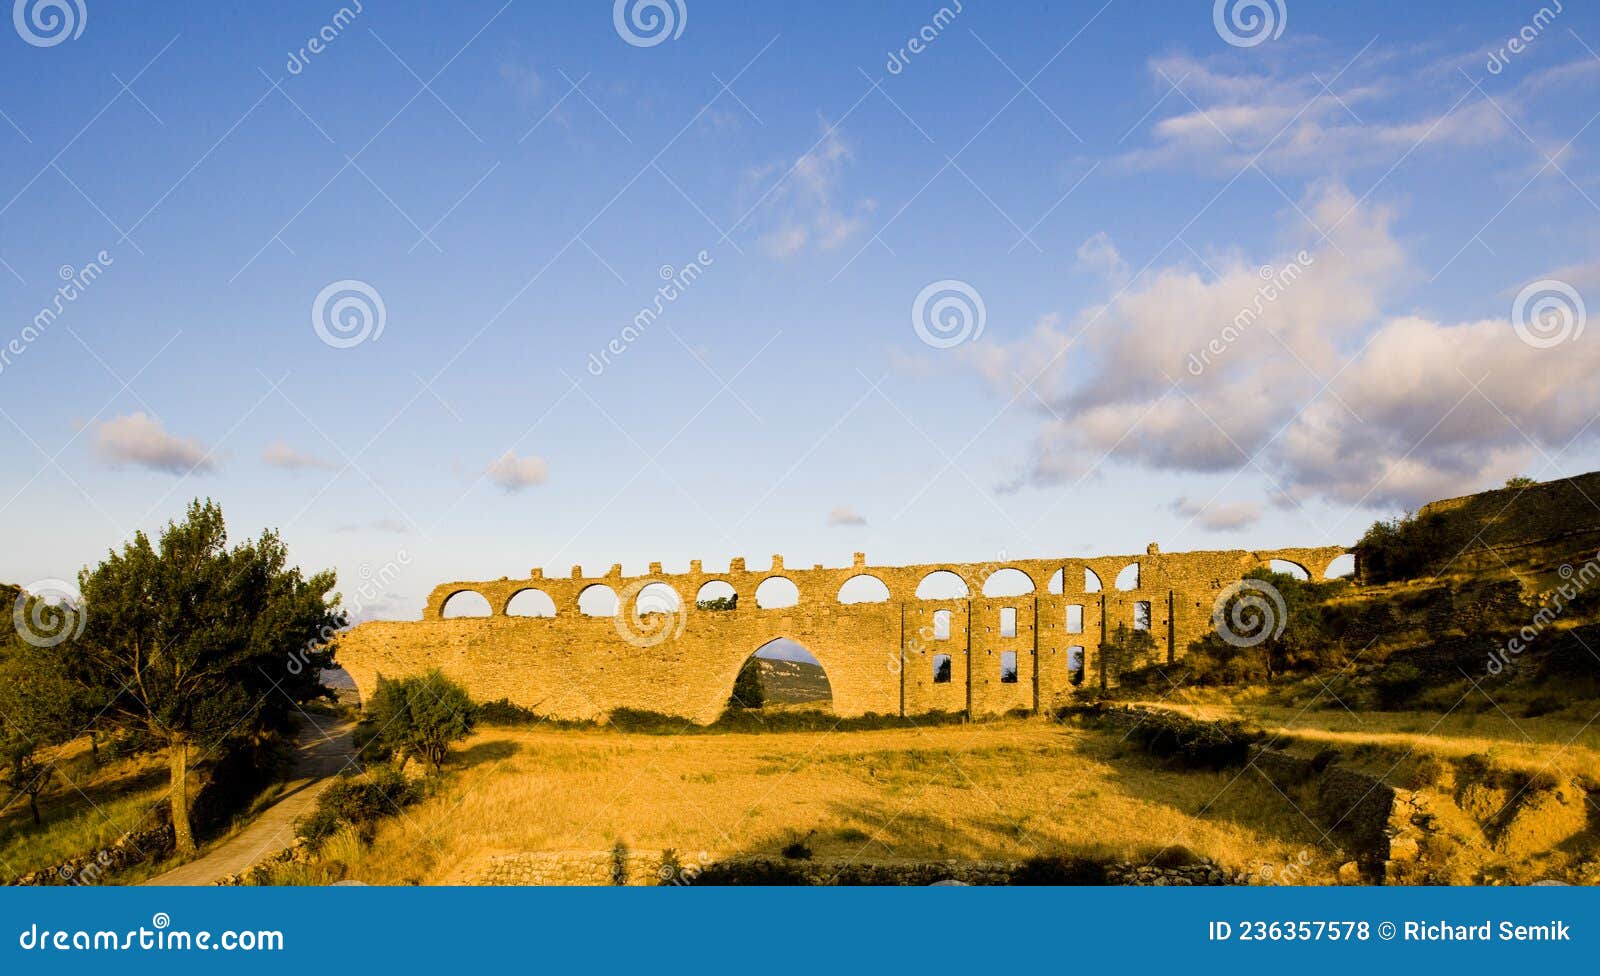 gothic aqueduct, morella, comunidad valenciana, spain